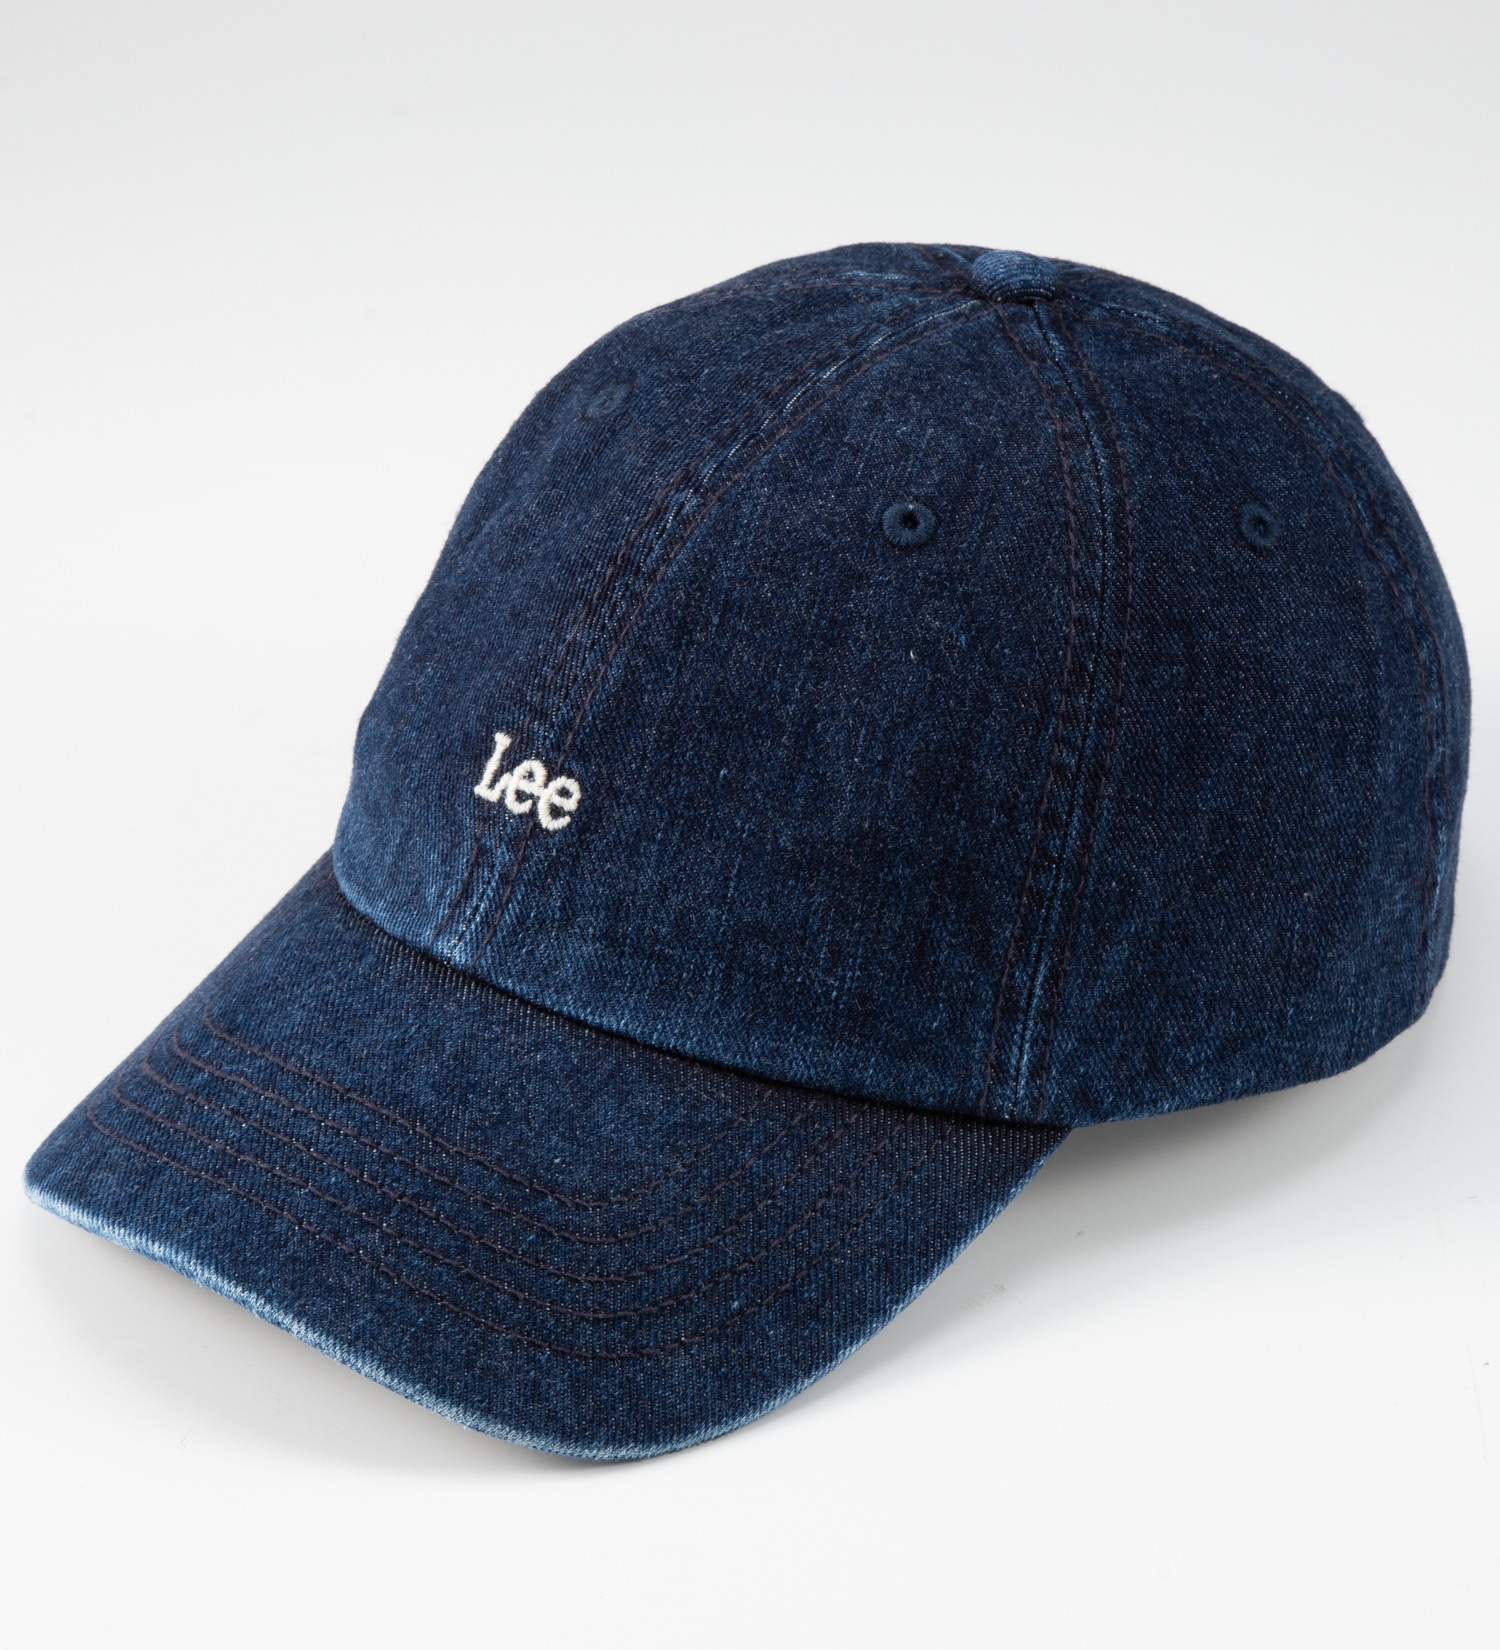 Lee(リー)のデニム ロゴキャップ|帽子/キャップ/メンズ|濃色ブルー